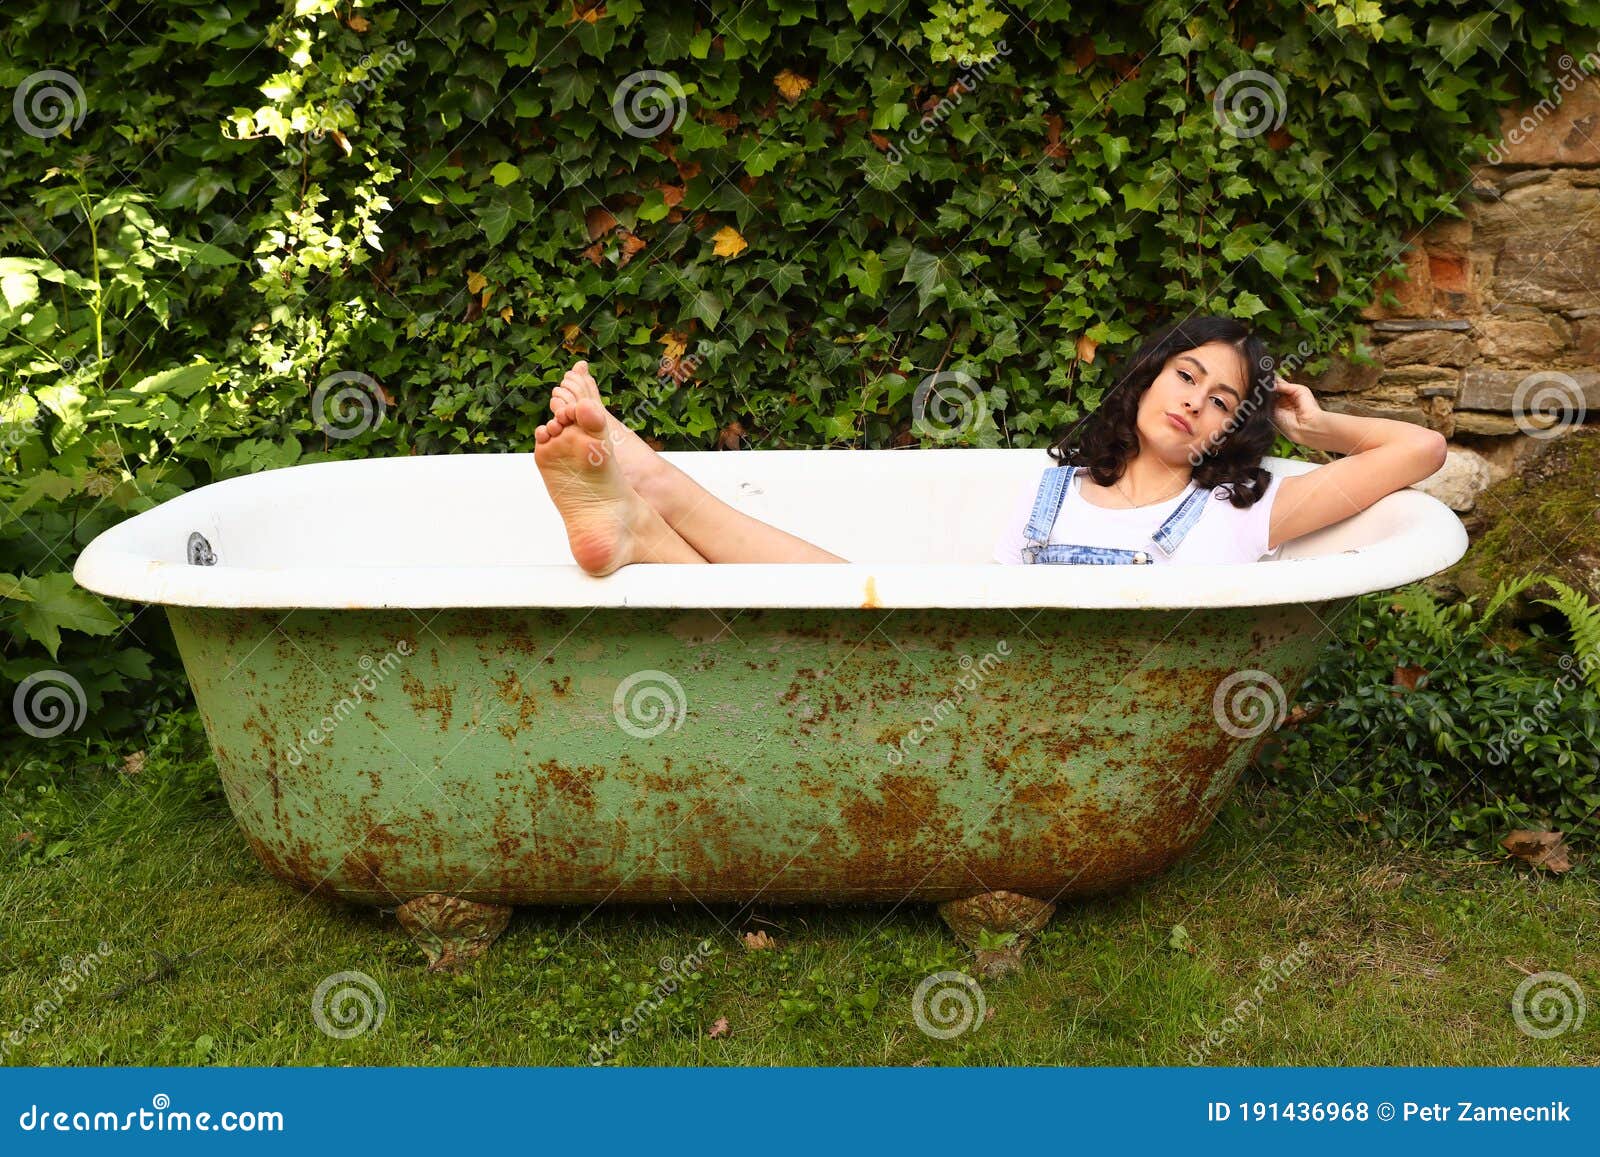 女性躺在浴缸裡洗泡泡浴圖片素材-JPG圖片尺寸6570 × 4380px-高清圖案501403162-zh.lovepik.com